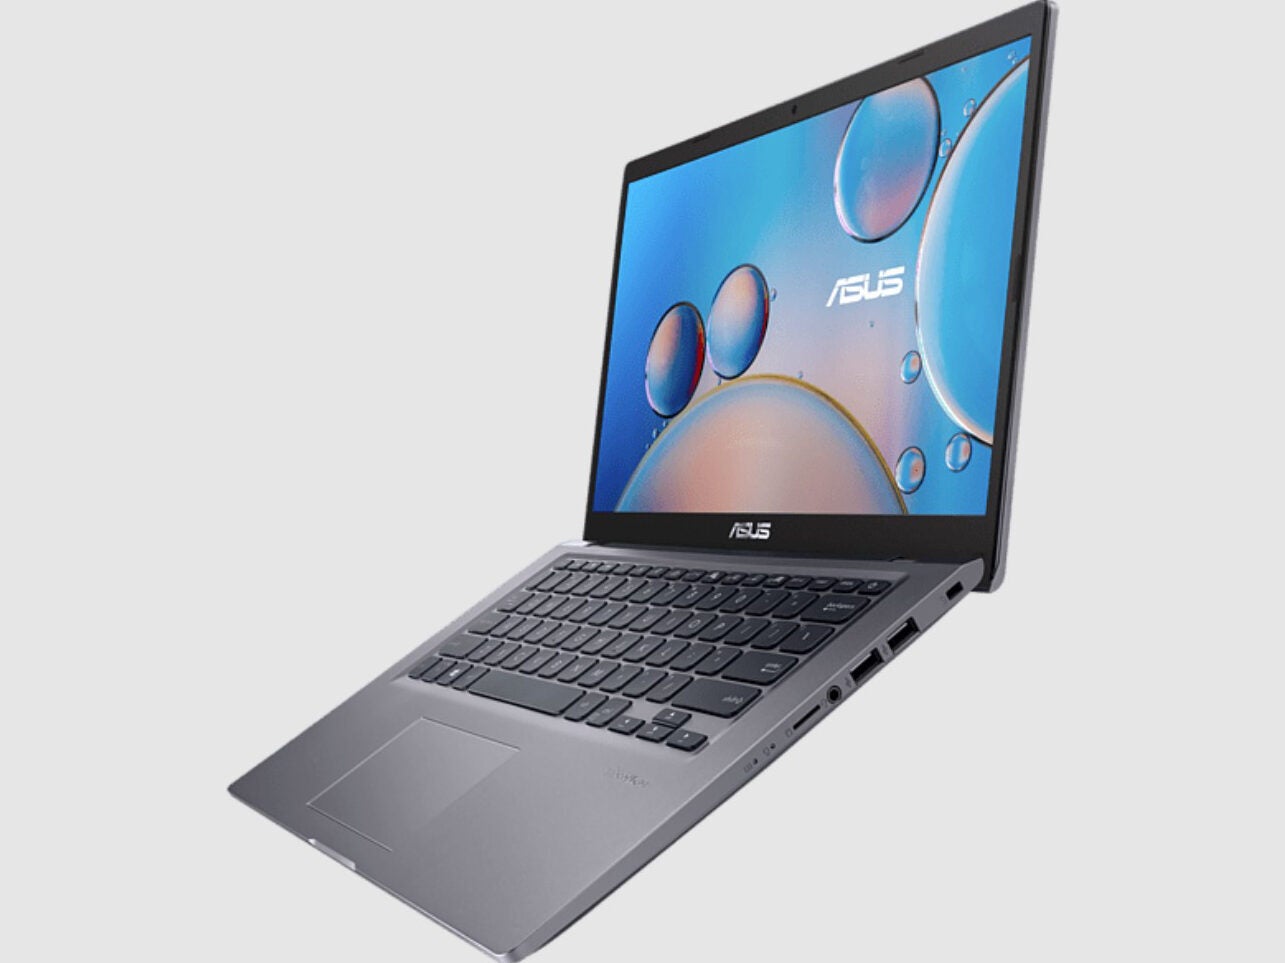 #Notebook-Schnäppchen bei MediaMarkt: Dieser Laptop mit i7-Chip ist jetzt 200 Euro günstiger